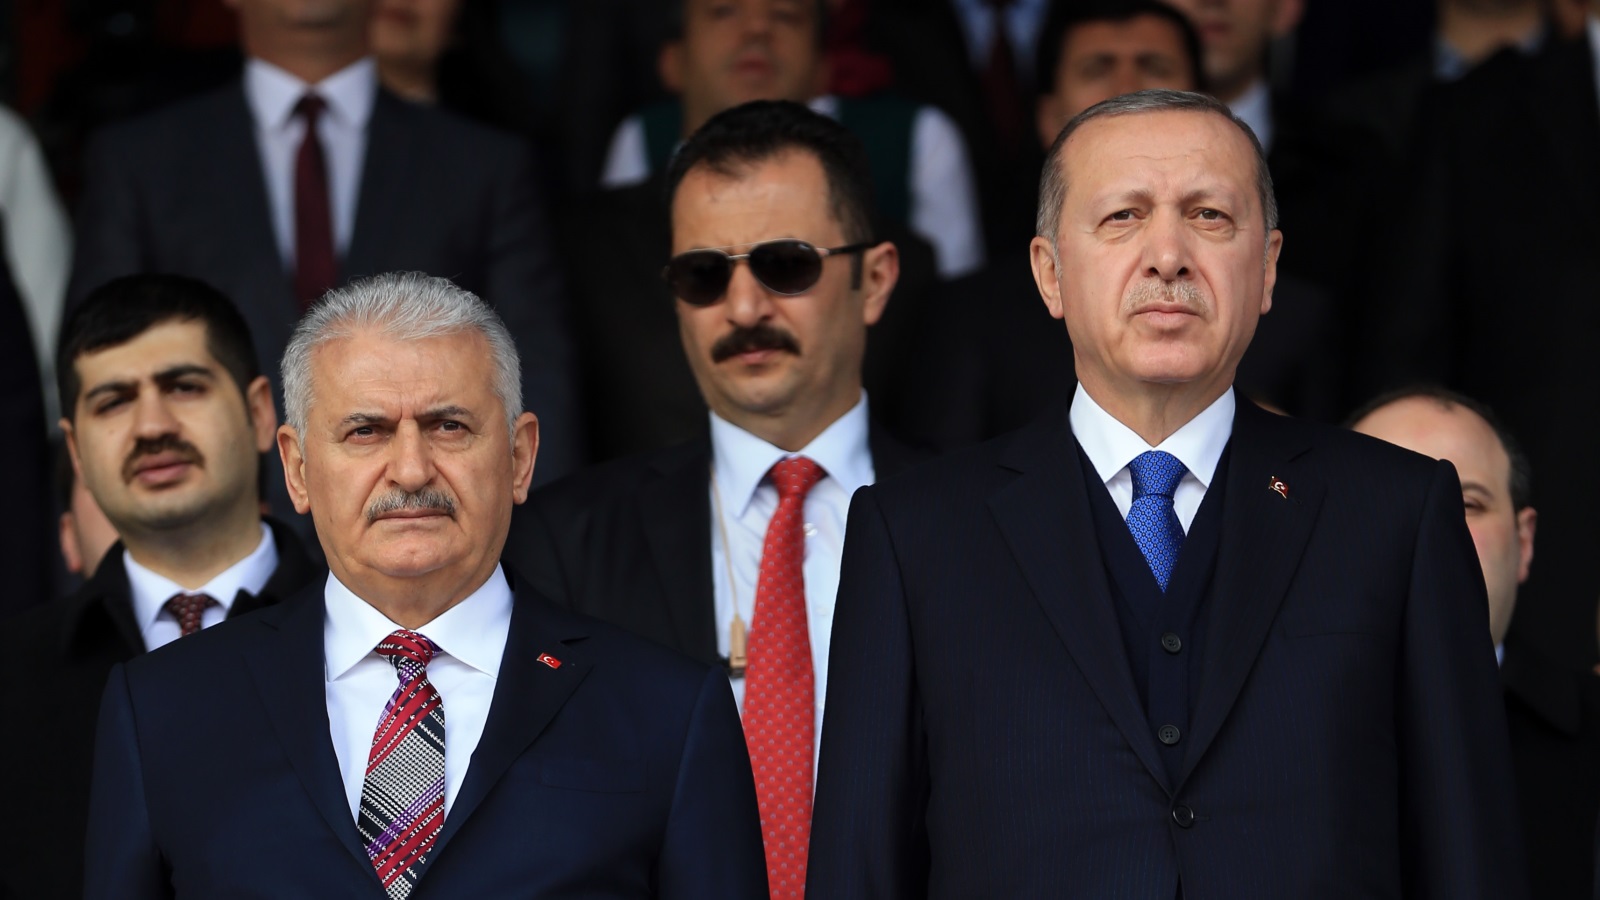 يرى أردوغان في يلدريم، المرشح الأفضل لخوض معركة انتخابات بلدية إسطنبول، كونه شخصية محبوبة ومقبولة في الشارع التركي، وقيادي نادر في صفوف الحزب، يمكن أن تجمع عليه القواعد الشعبية وتتوحد خلفه بقوة